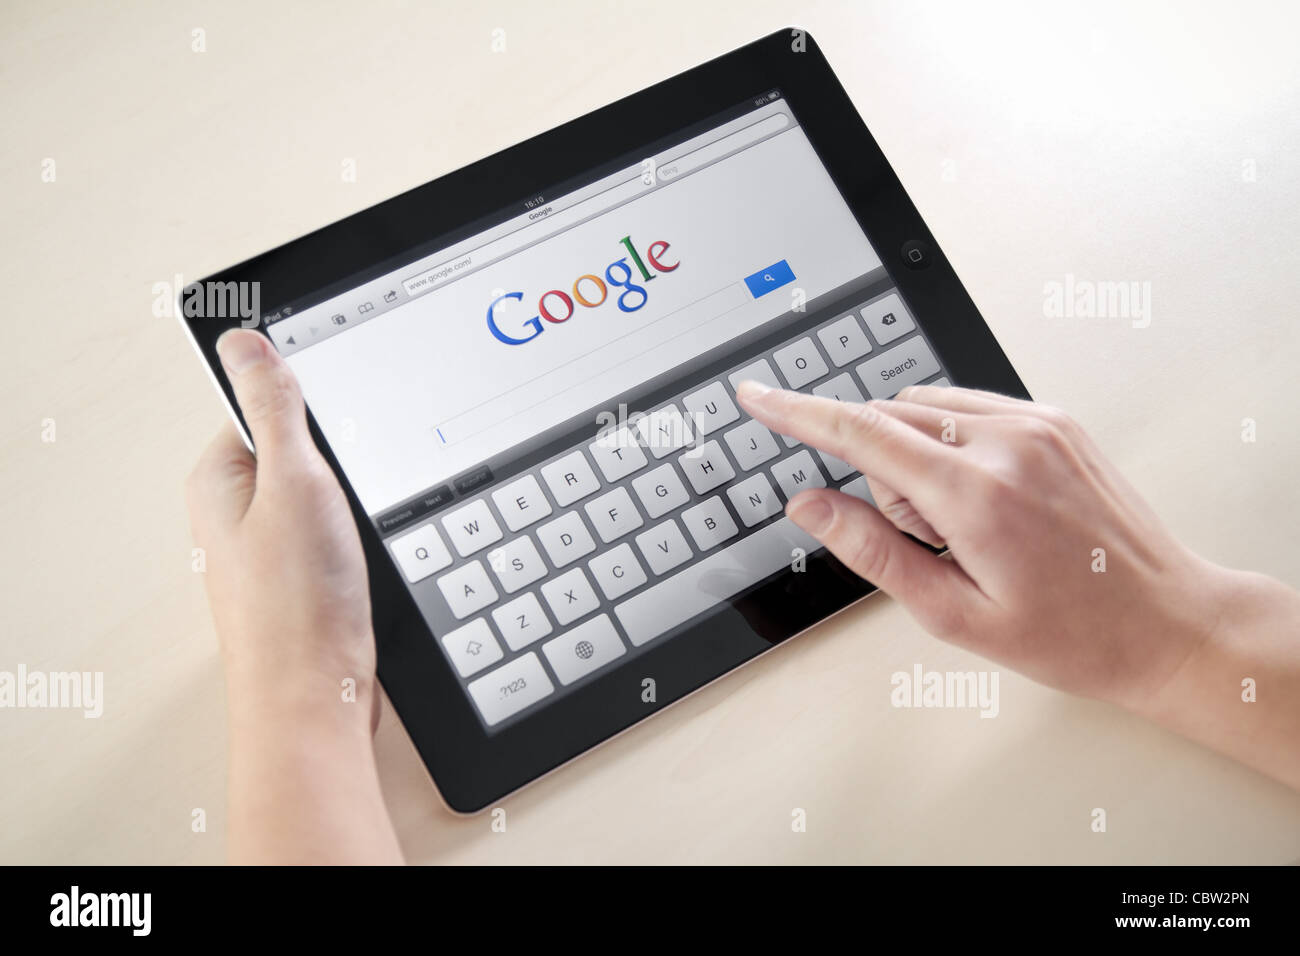 Femme mains tenant et toucher sur Apple iPad2 avec Google search page web sur un écran. Banque D'Images